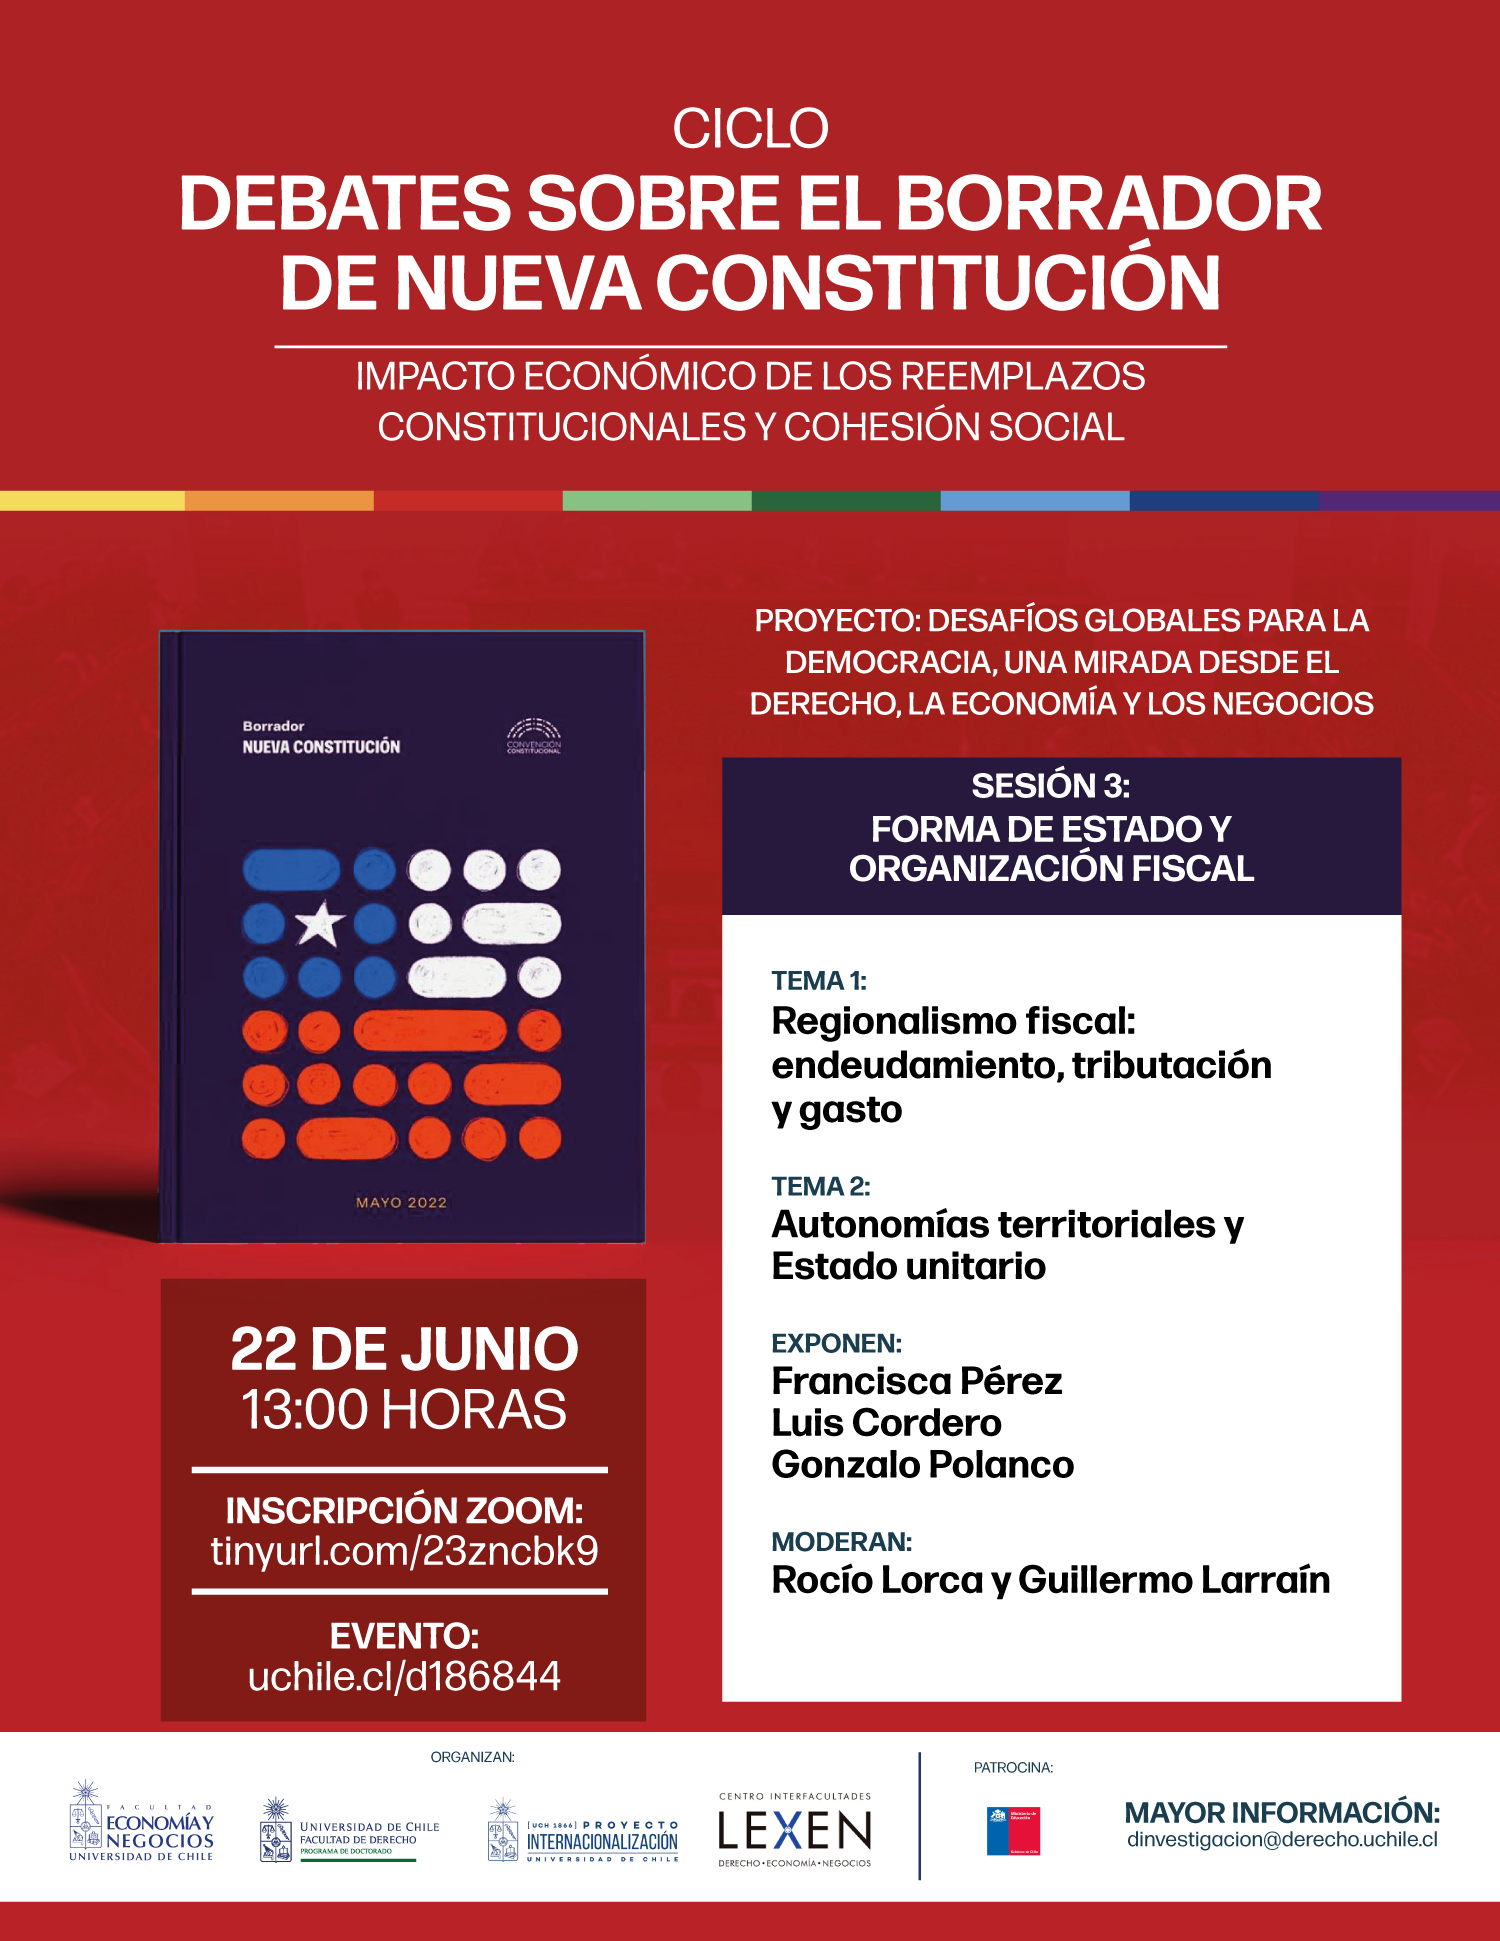 Universidad de Chile invita a Ciclo "Debates sobre el borrador de nueva Constitución" - Sesión 3